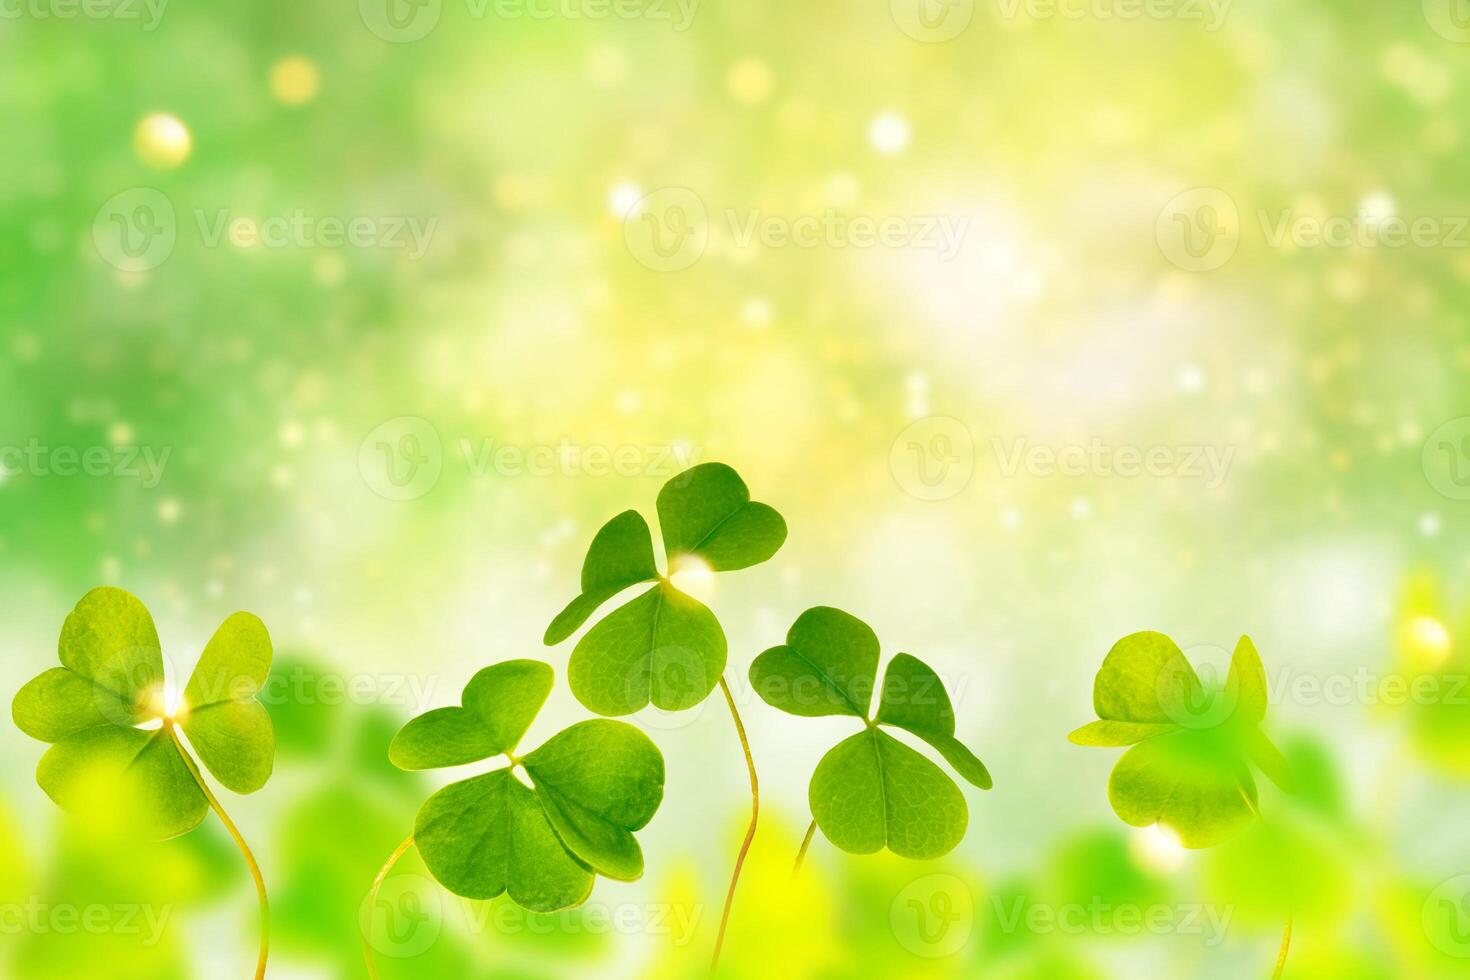 grüne Kleeblätter auf einer Hintergrundsommerlandschaft. St.Patrick's Day foto